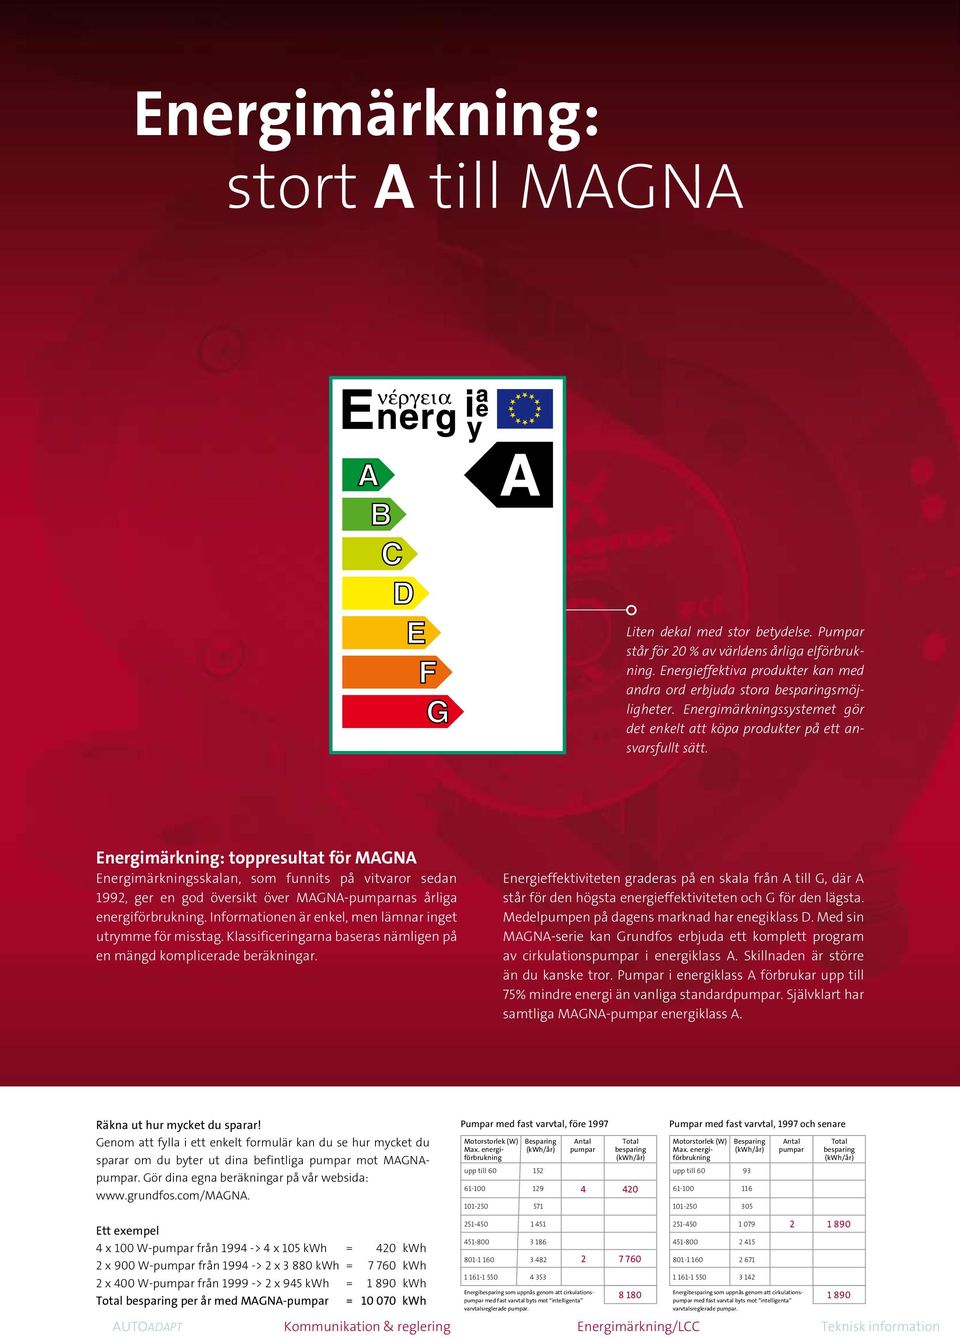 Energimärkning: toppresultat för MAGNA Energimärkningsskalan, som funnits på vitvaror sedan 1992, ger en god översikt över MAGNA-pumparnas årliga energiförbrukning.